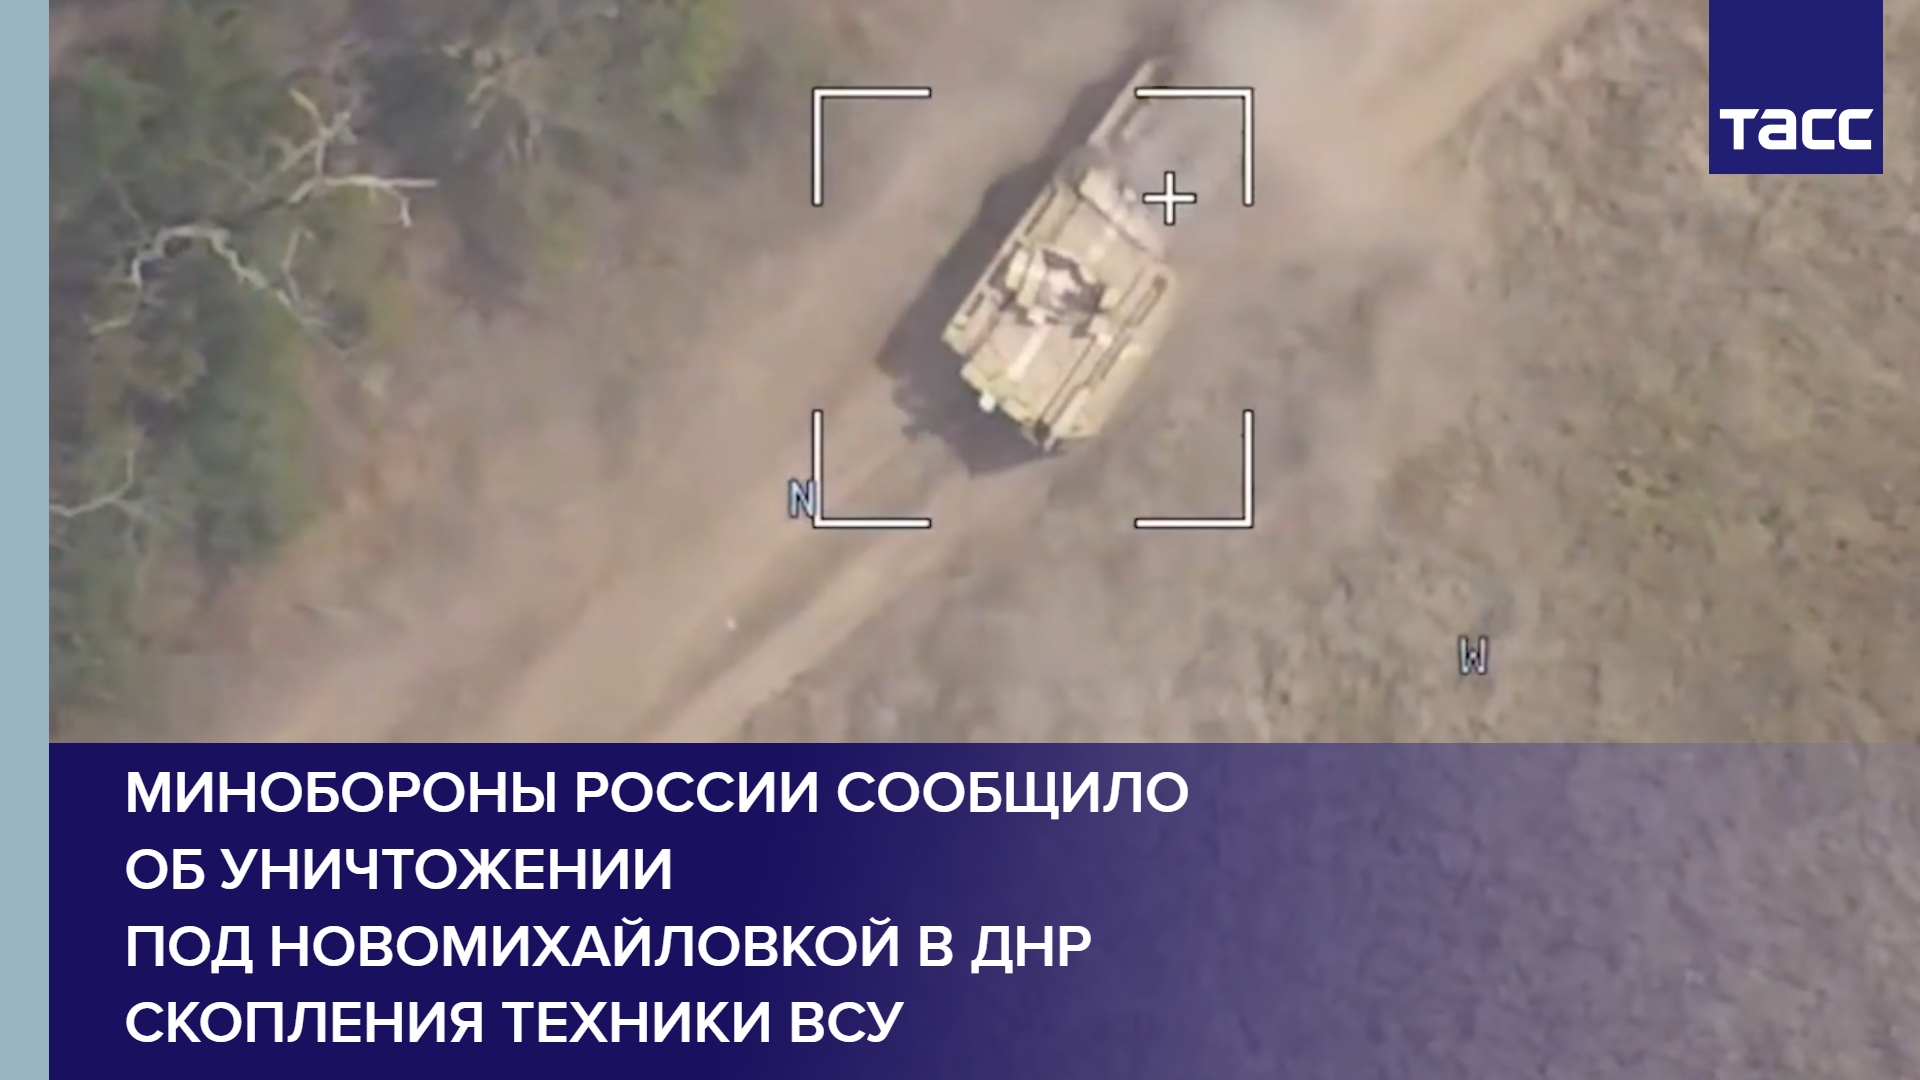 Минобороны России сообщило об уничтожении под Новомихайловкой в ДНР скопления техники ВСУ